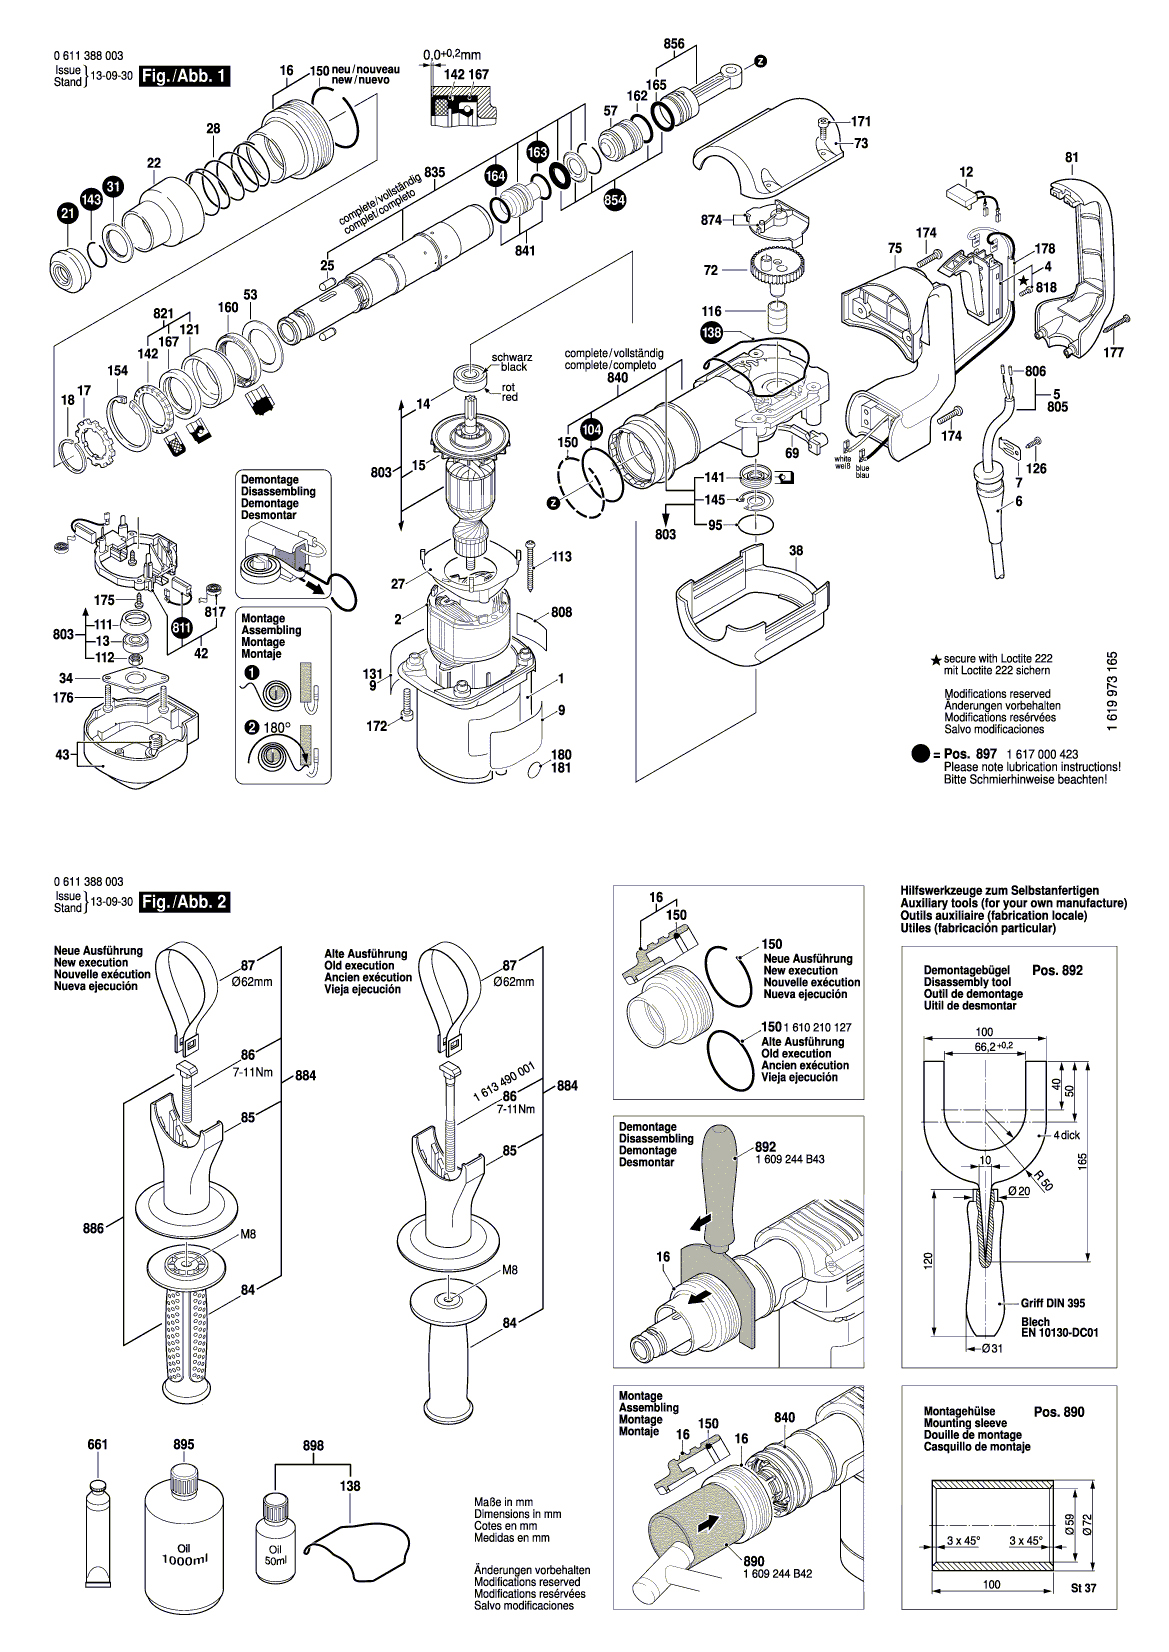 Схема на Відбійний молоток Bosch GSH 388 (0 611 388 003)